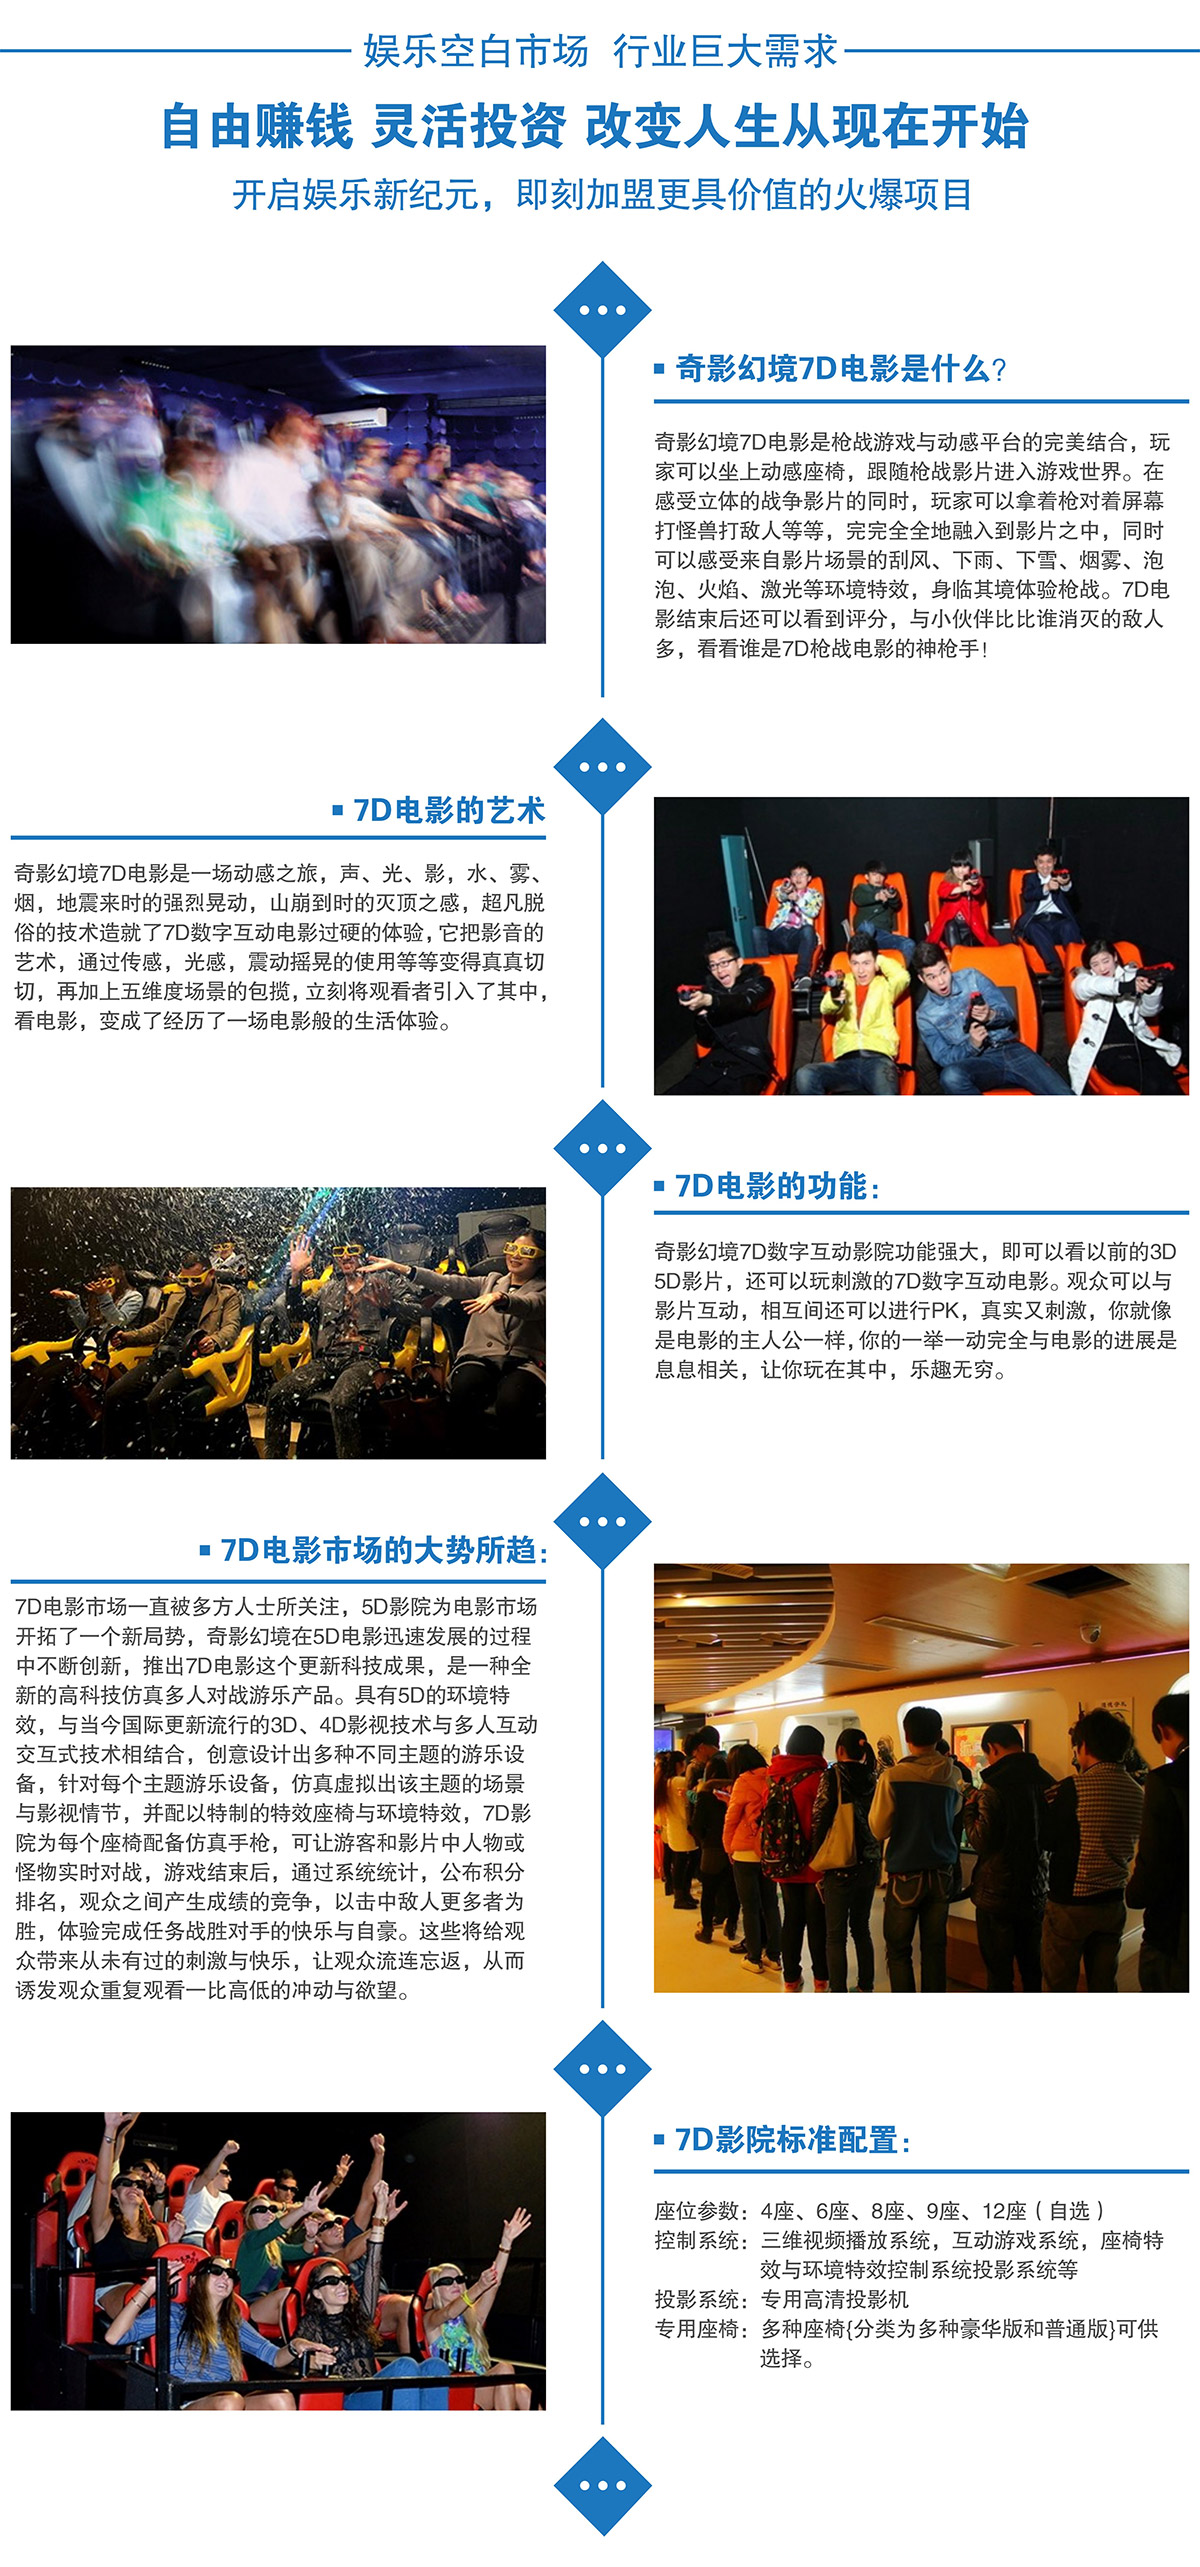 重庆娱乐空白市场7D电影行业巨大需求.jpg